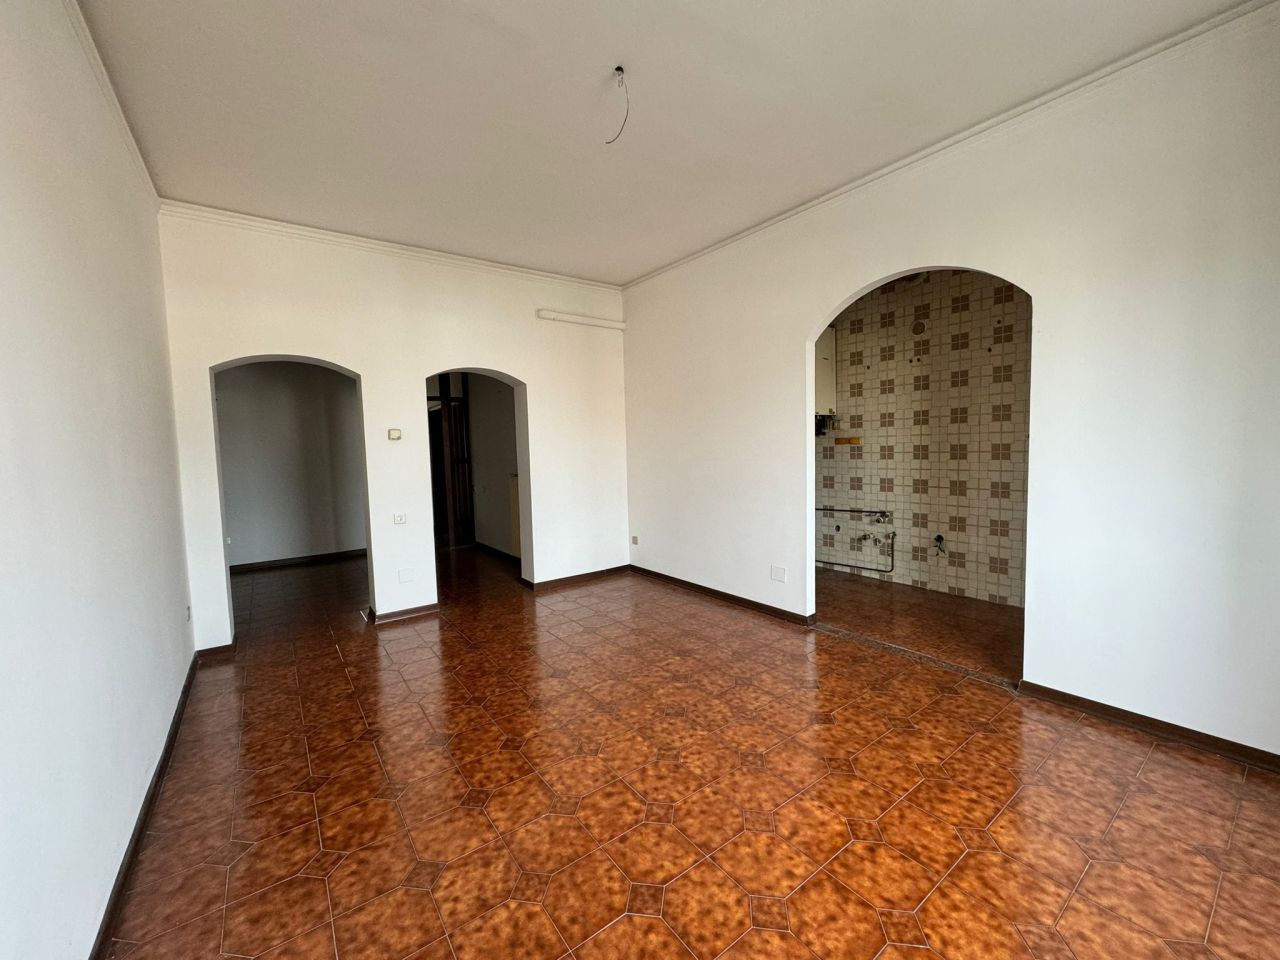 Appartamento in vendita a Rovigo, 5 locali, prezzo € 70.000 | PortaleAgenzieImmobiliari.it